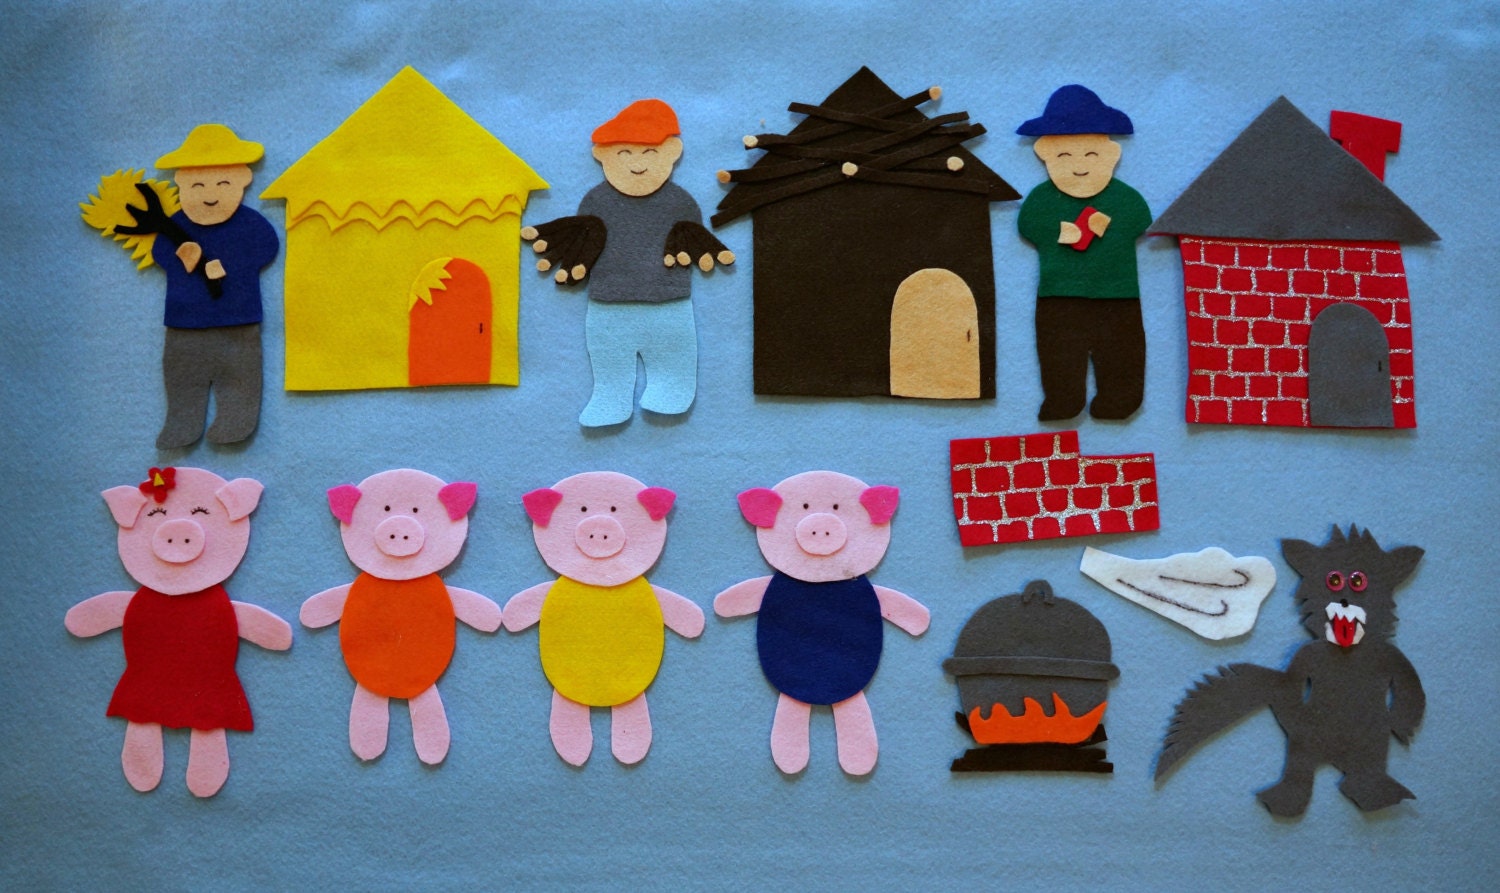 three-little-pigs-flannel-board-story-felt-board-by-rainbowicekids